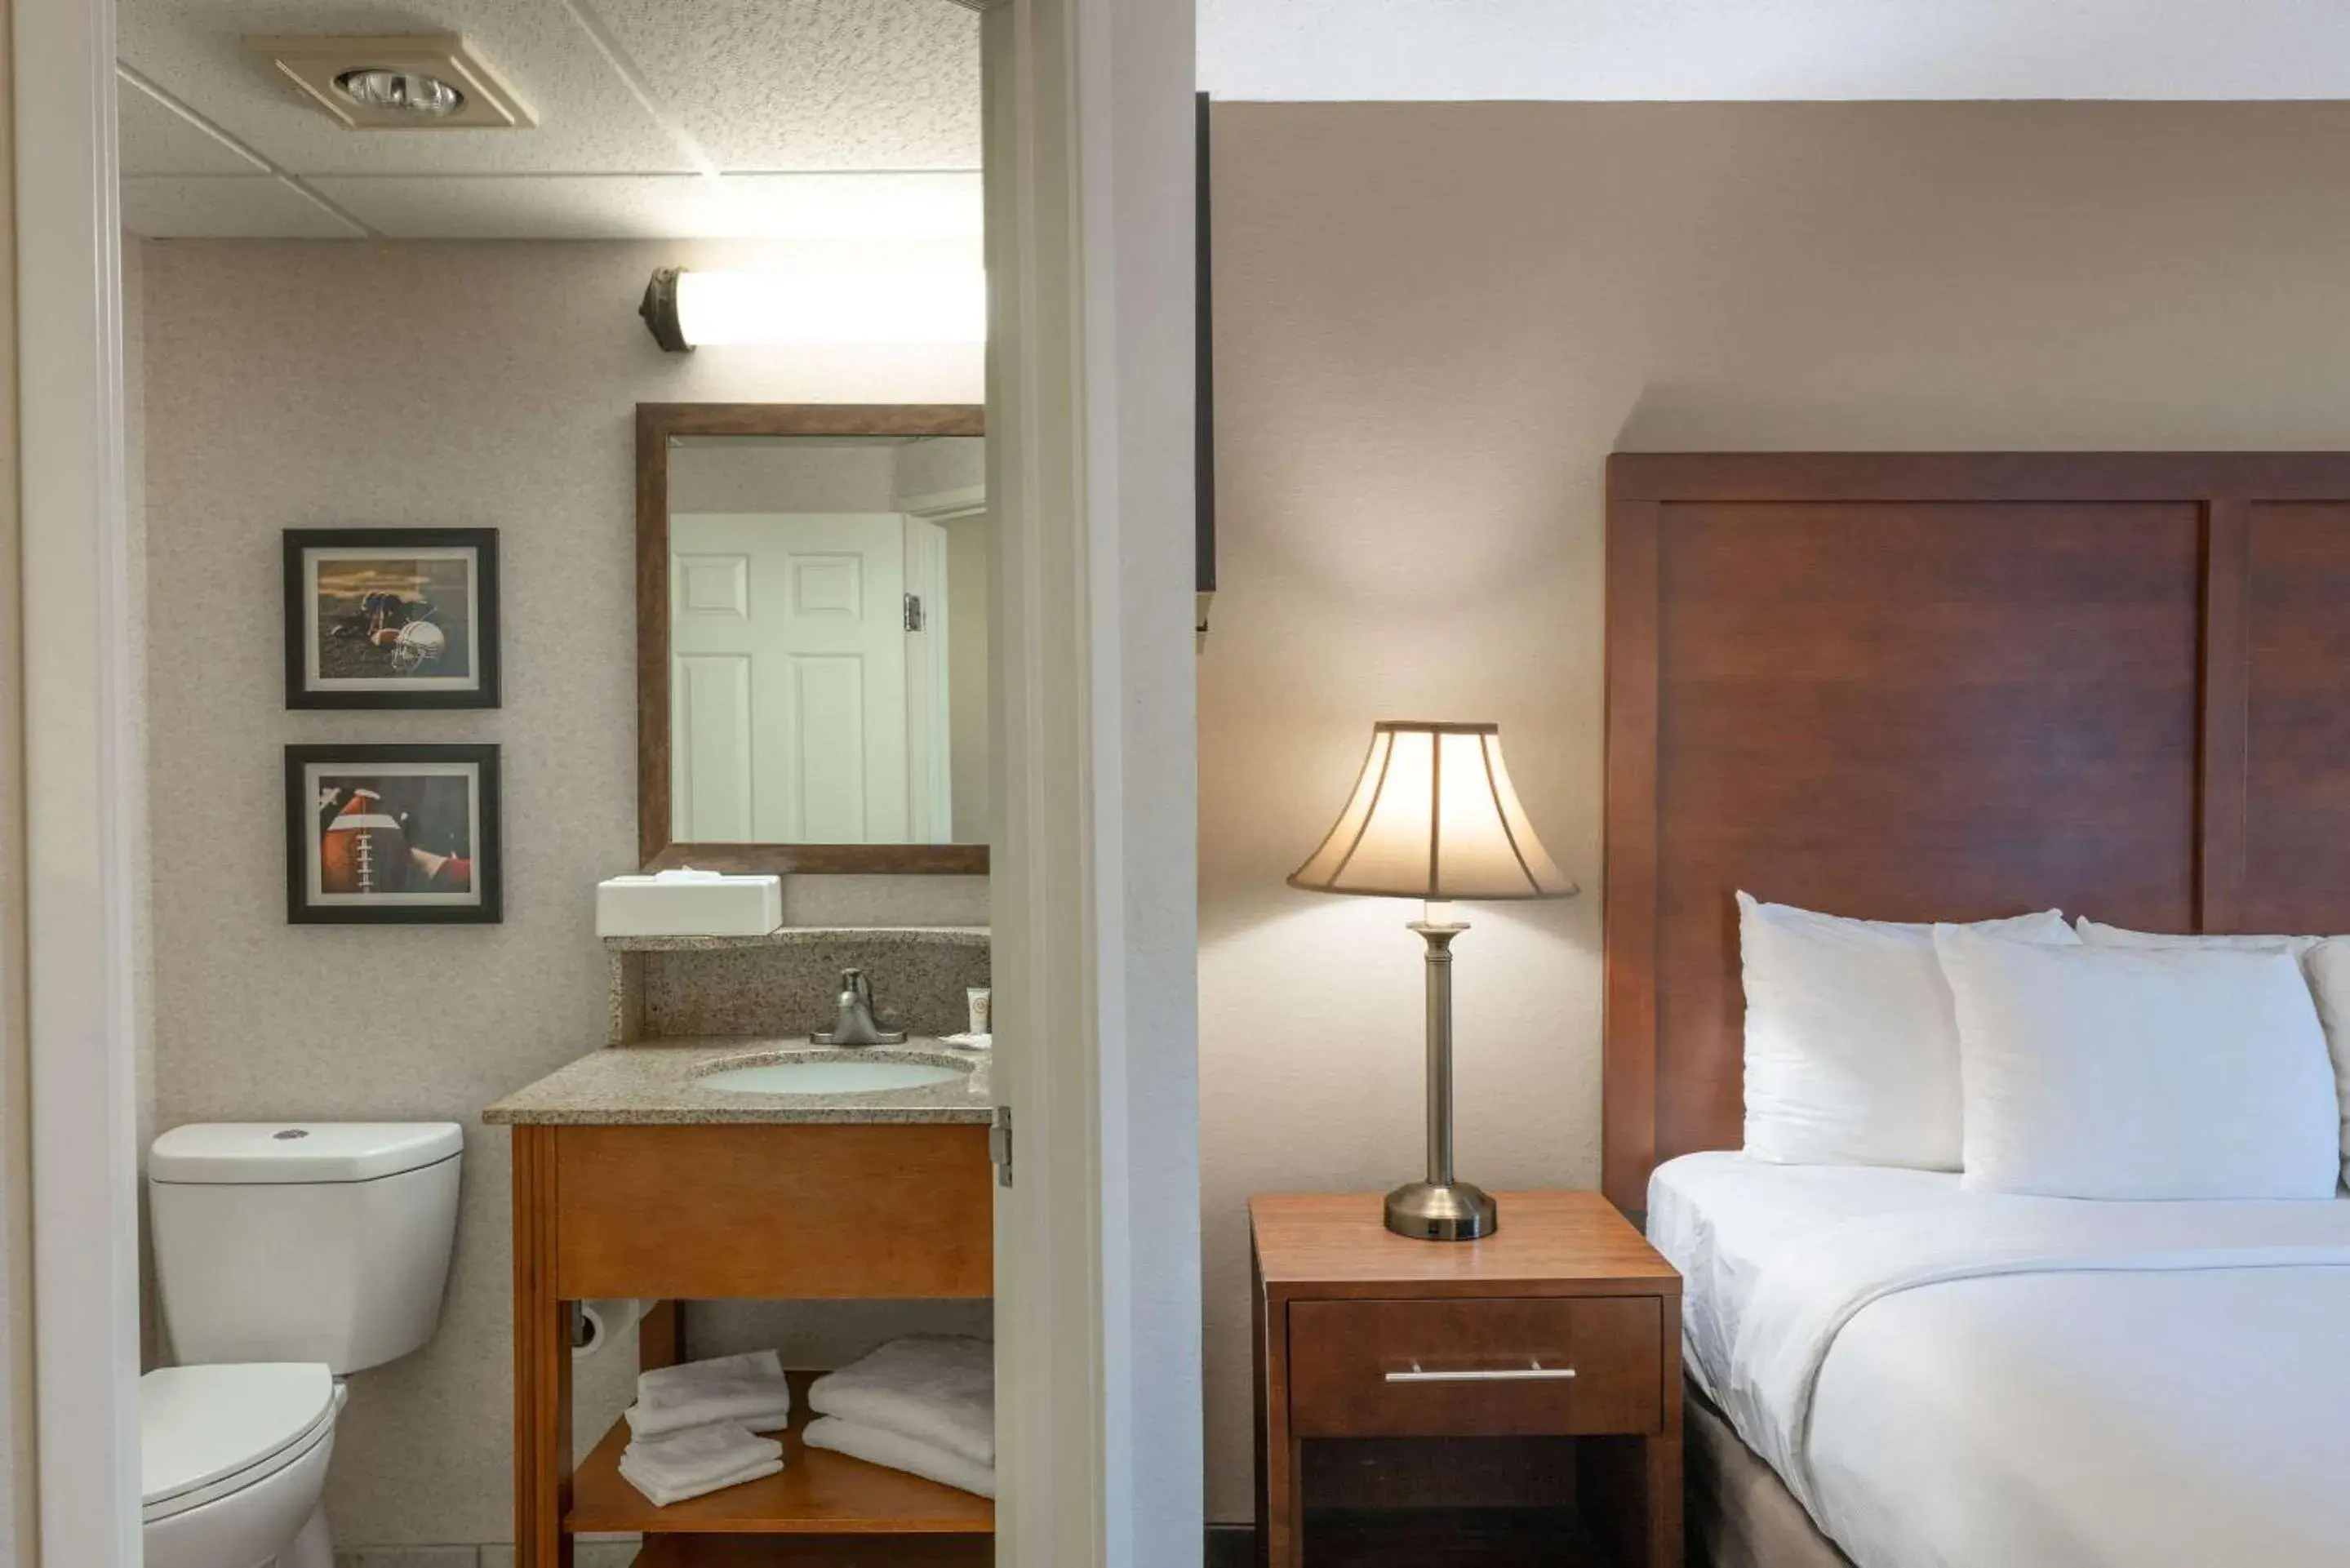 Bedroom, Bathroom in MainStay Suites Foxboro - Mansfield